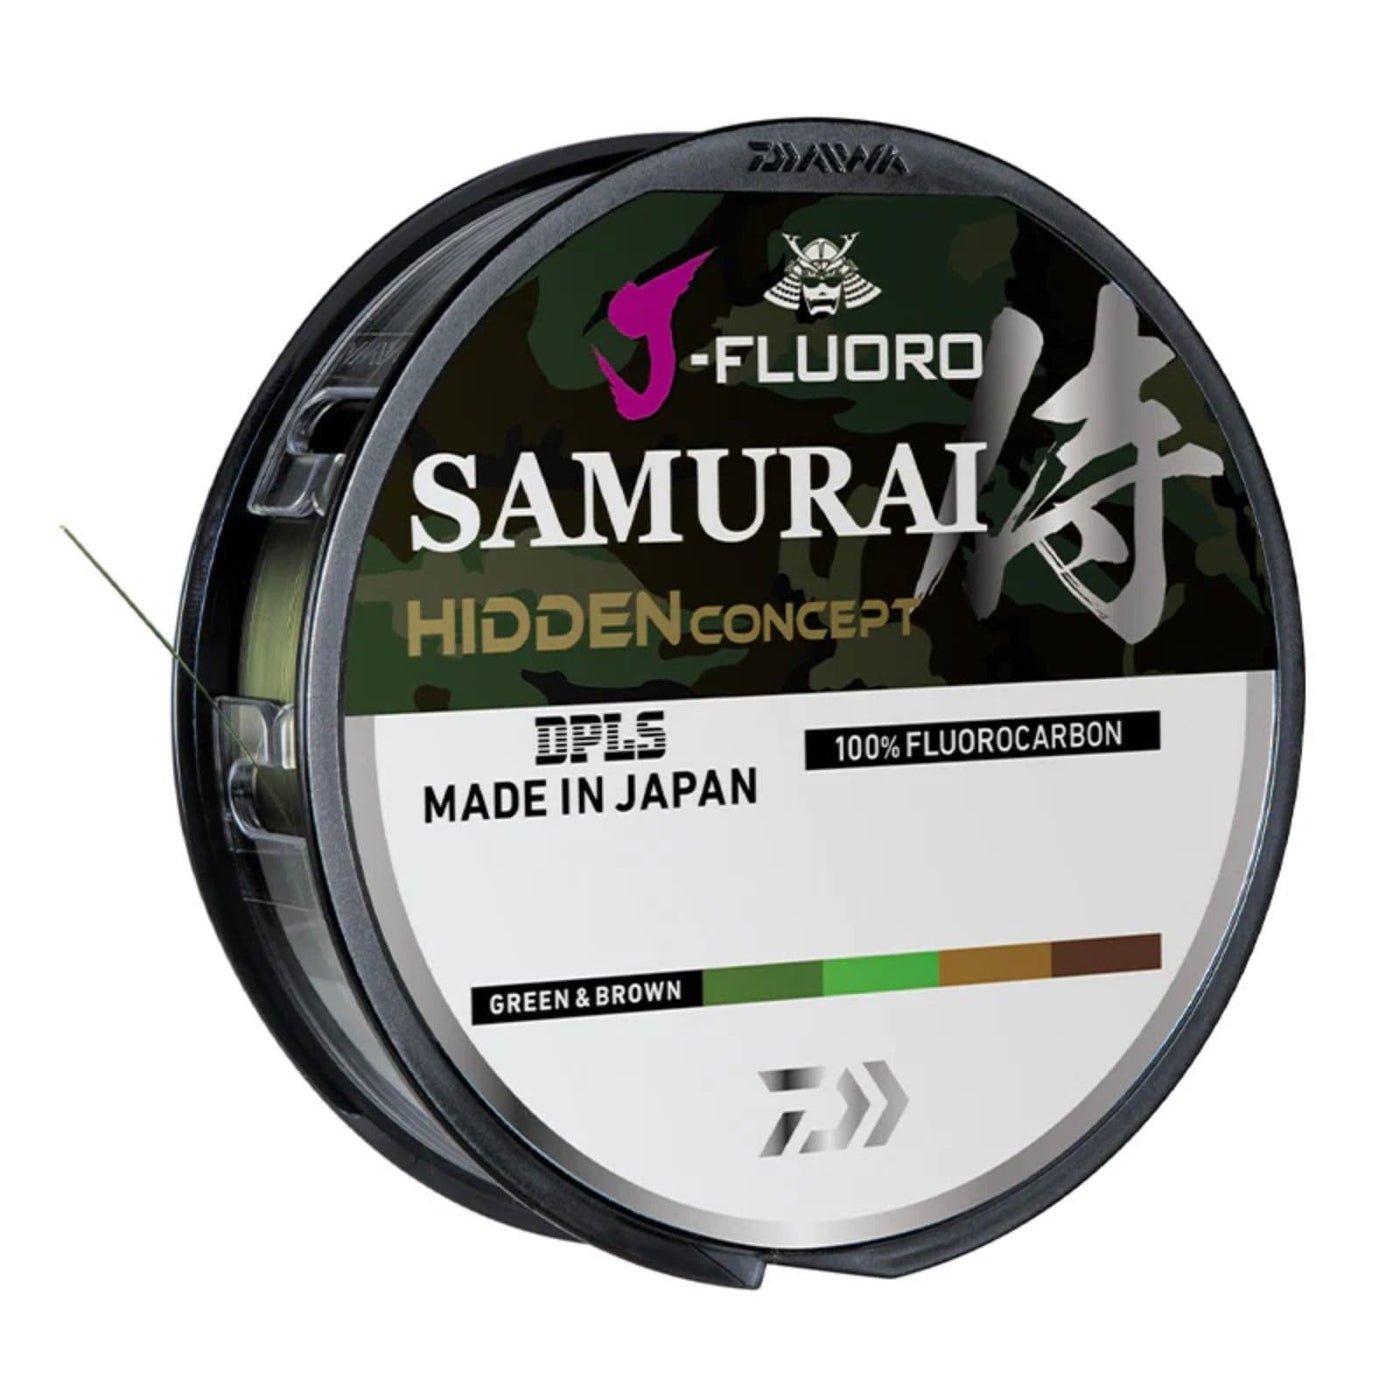 Daiwa Daiwa J-Fluoro Samurai Hidden Fluorocarbon Line Filler 14lb Fishing